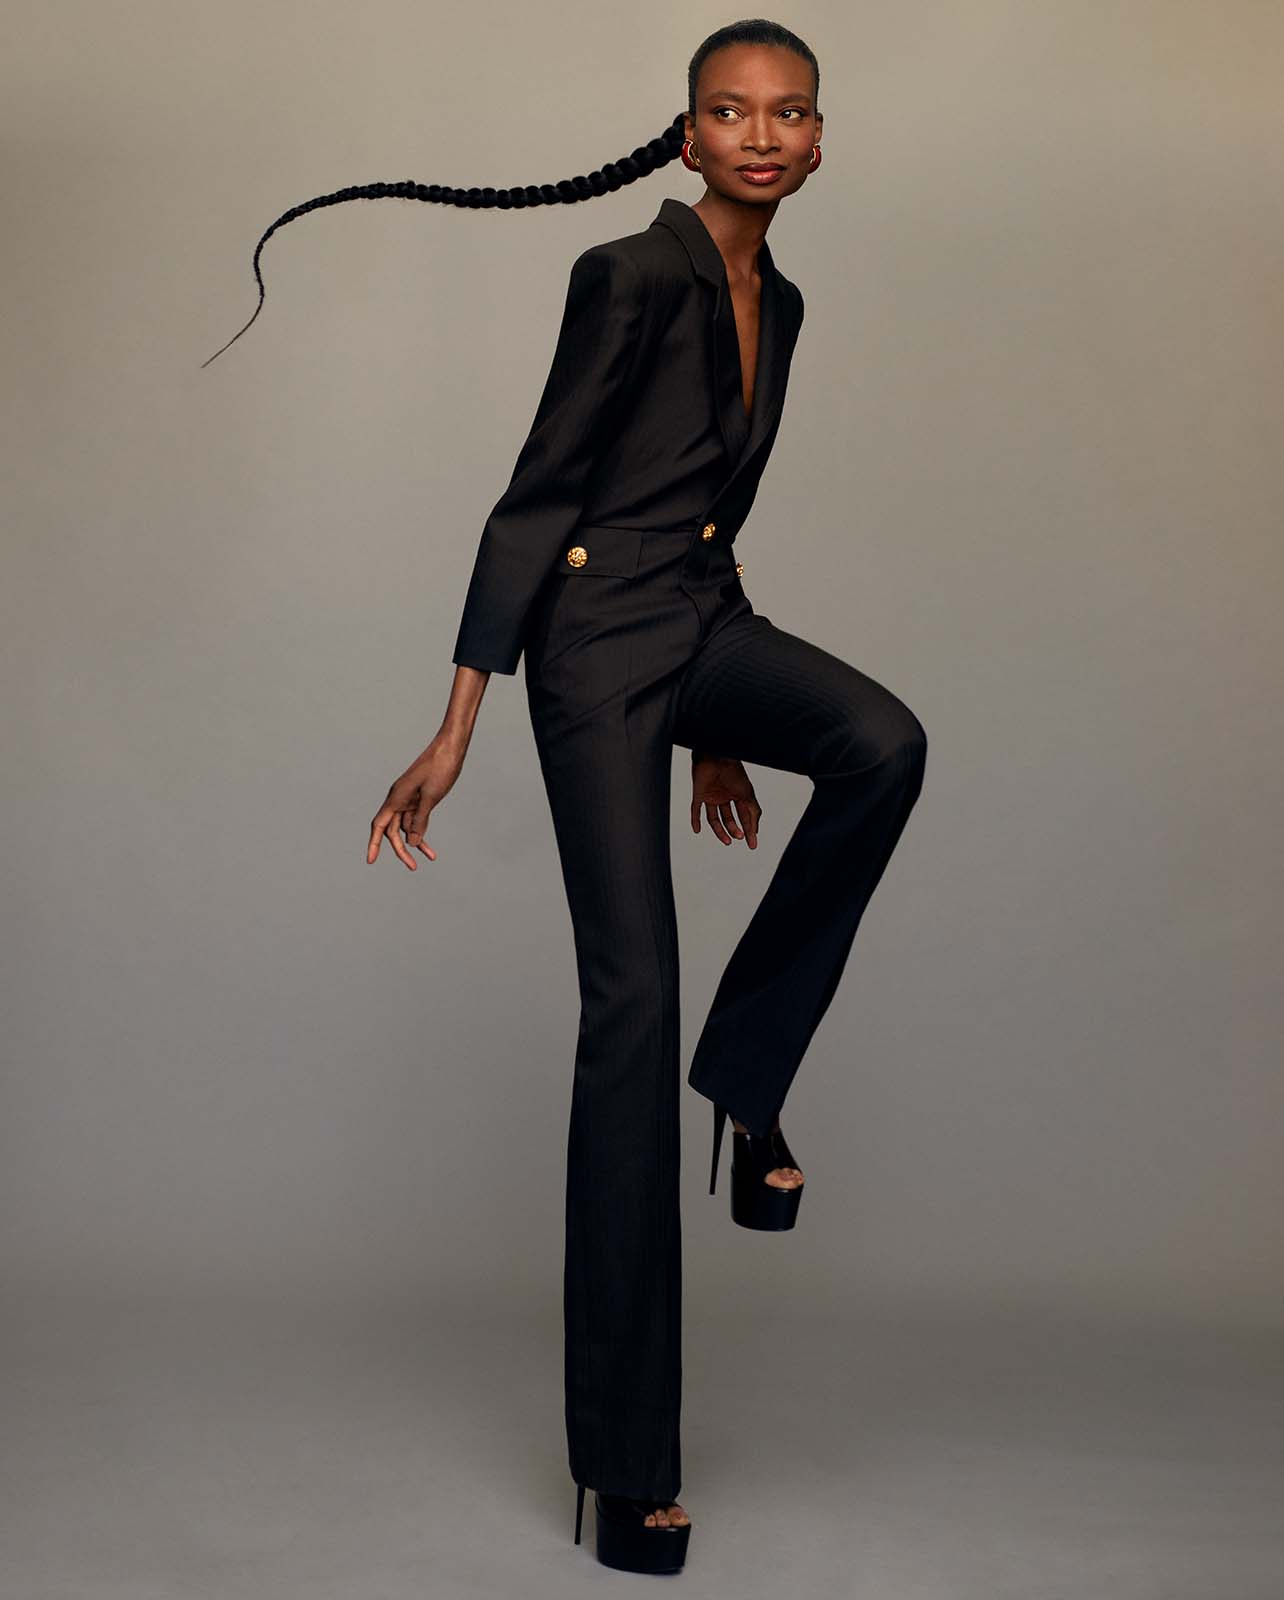 Model poses in a black suit set and black platform heels